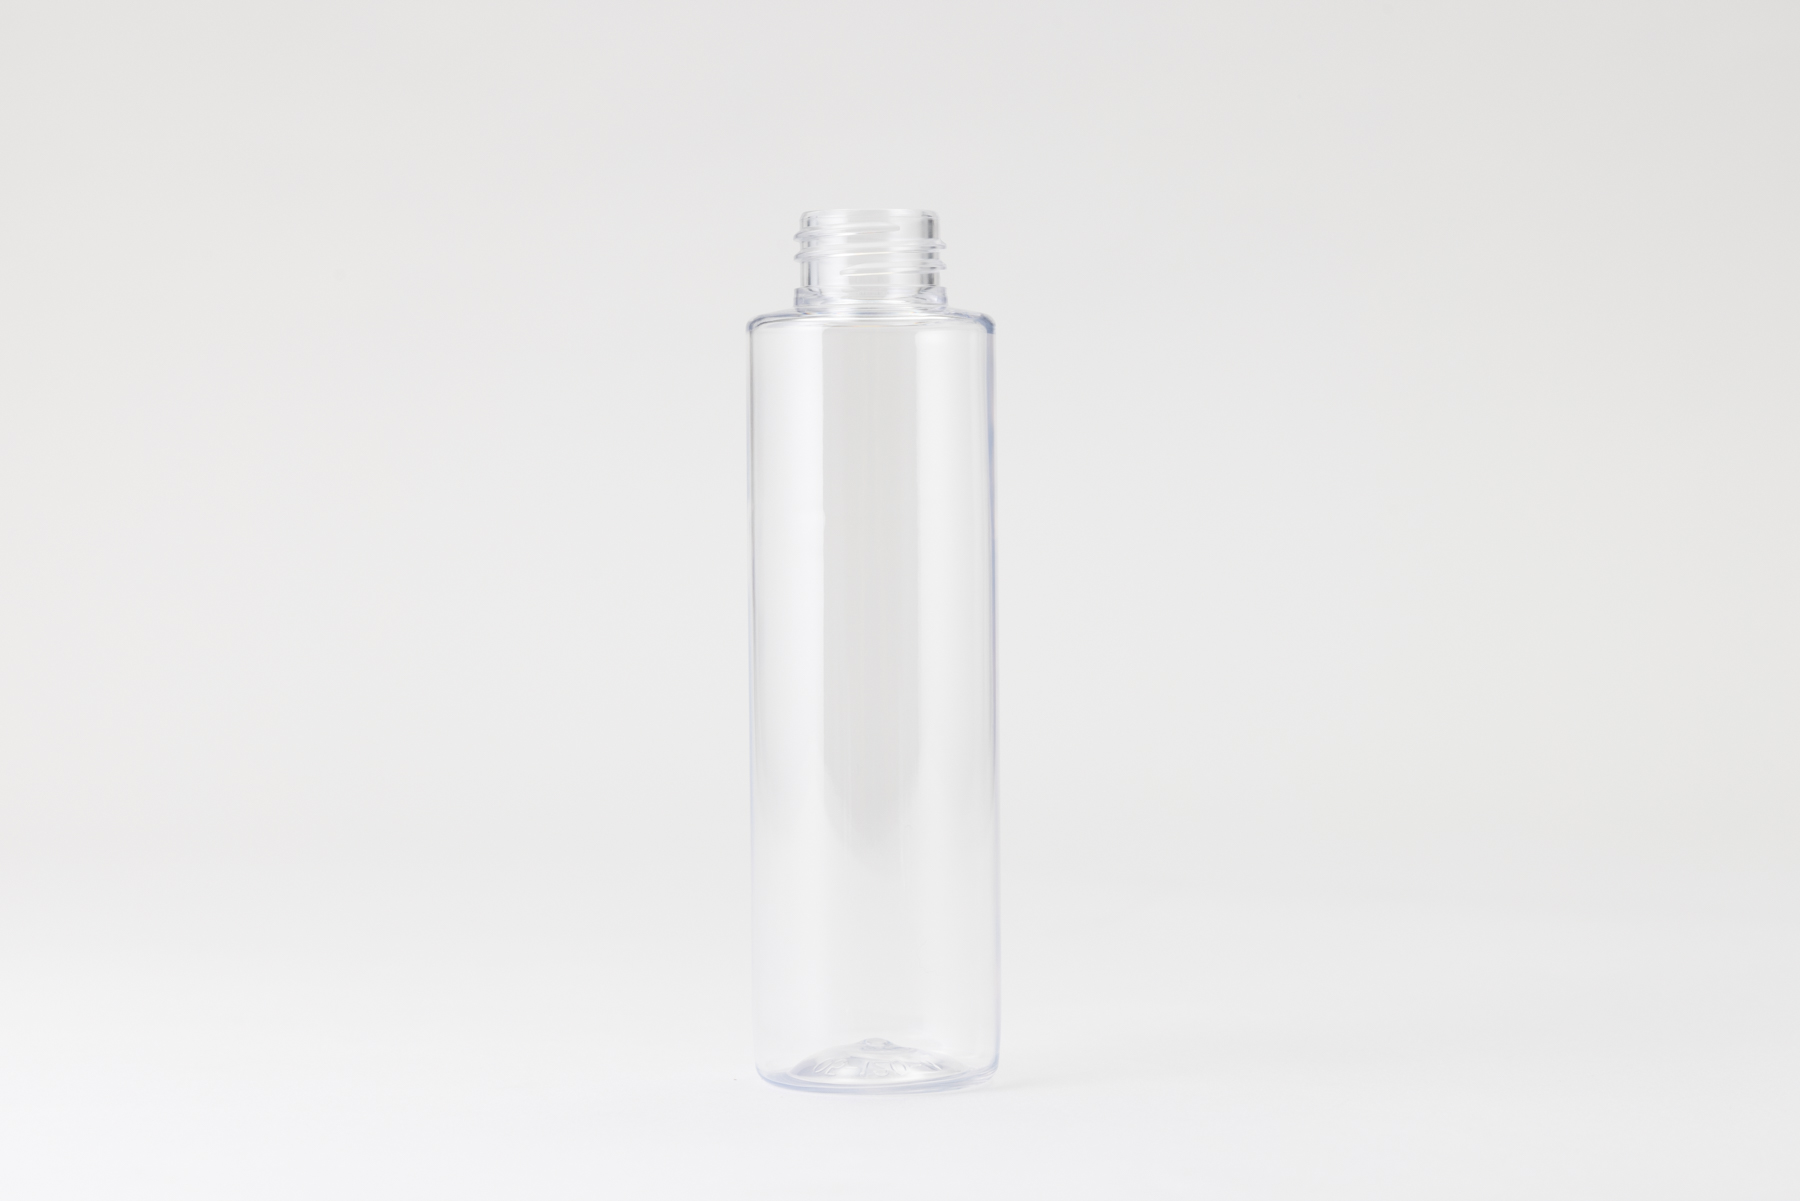 【化粧品容器】小ロット在庫対応の標準ナチュラル仕様ボトル SB05-120C〈プラスチック〉